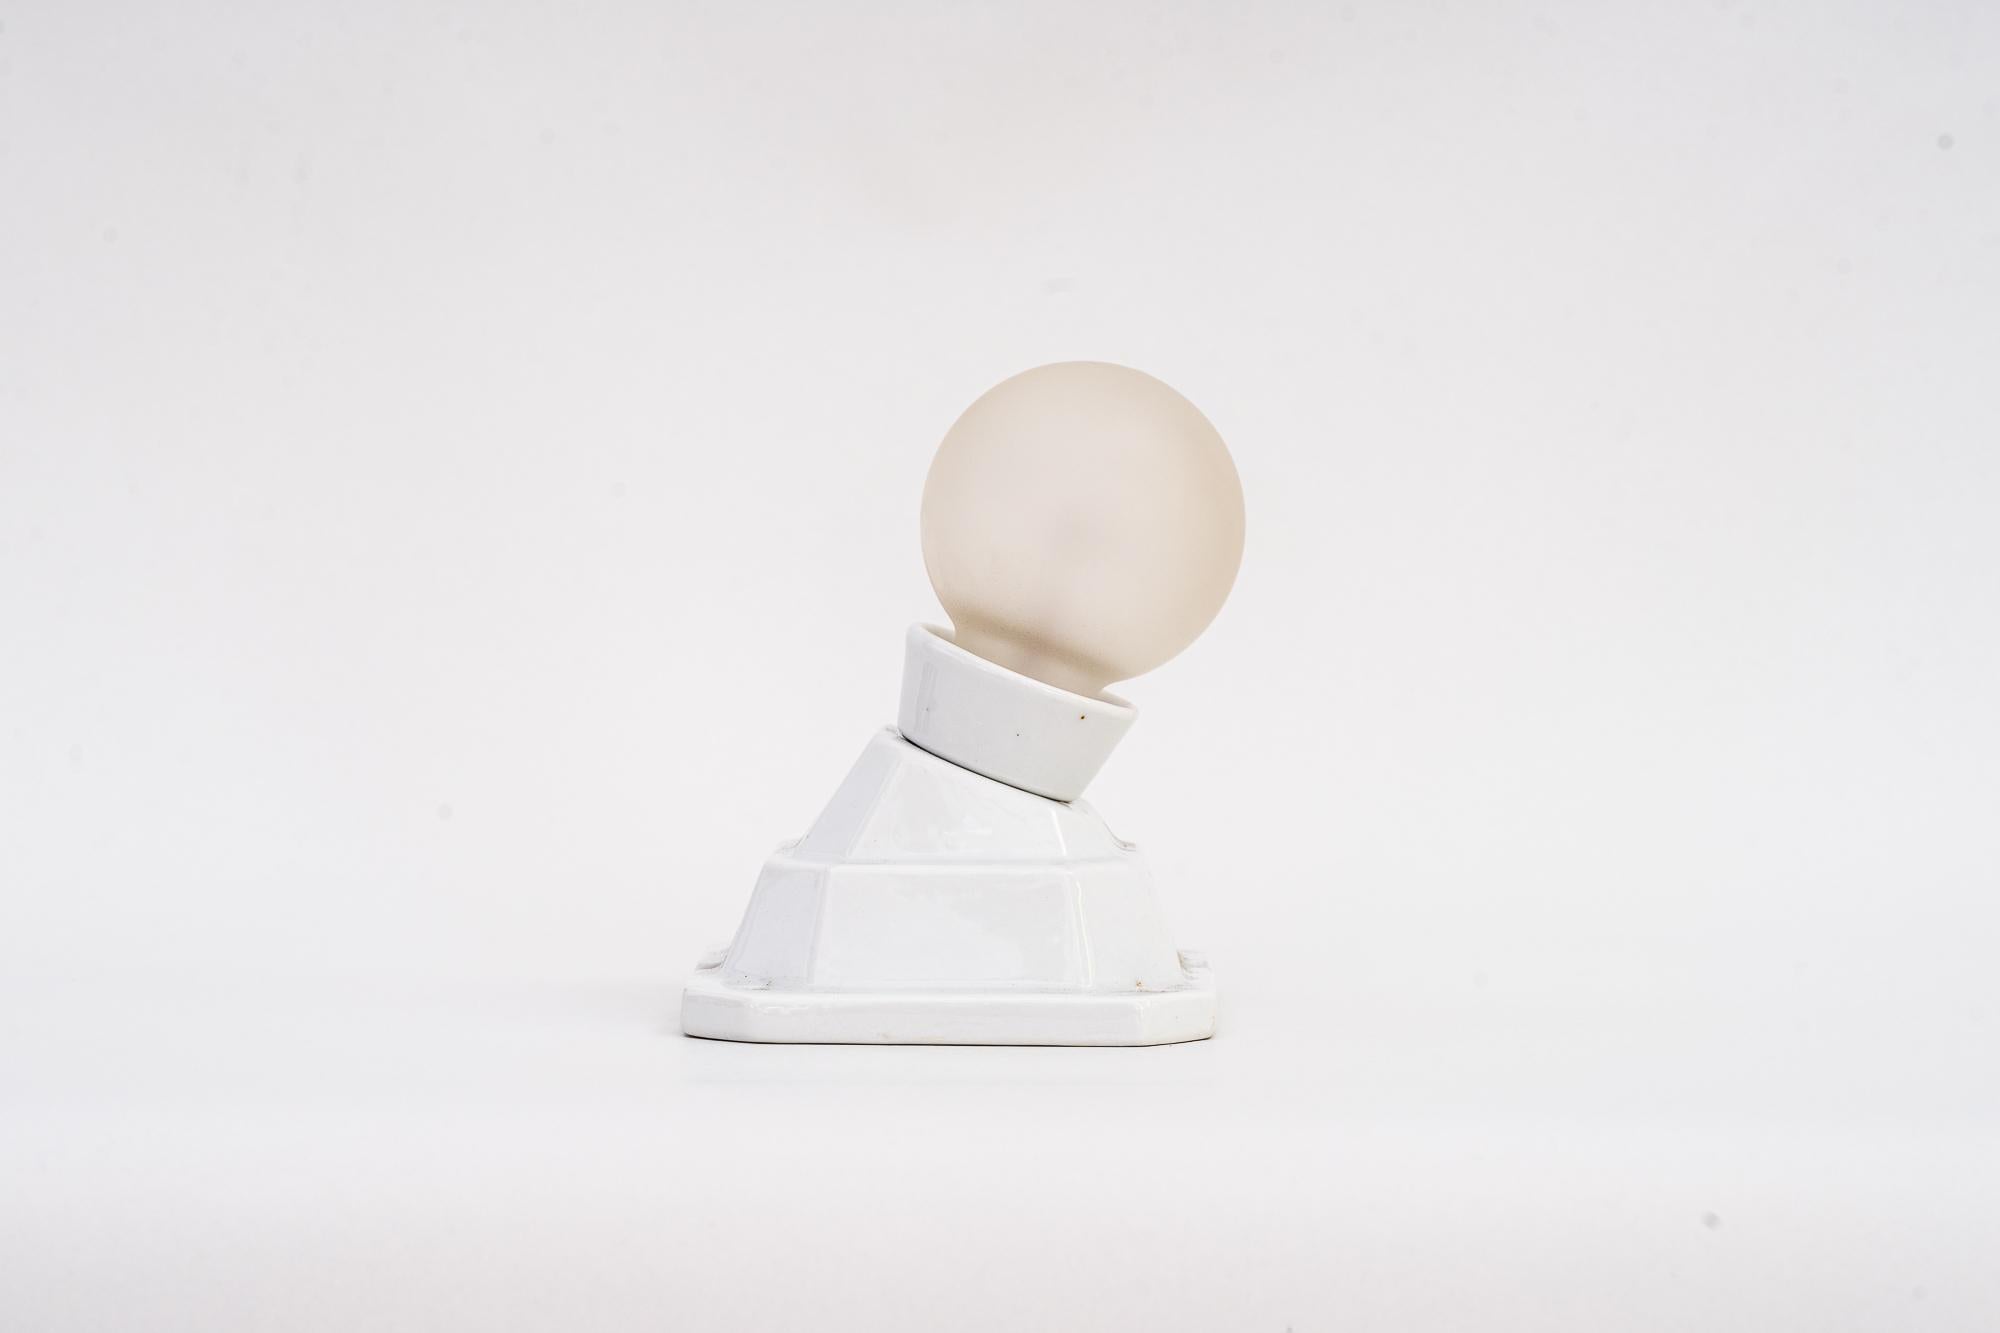 Plafonnier ou applique en porcelaine Art Déco, Bauhaus, Allemagne, vers 1920
État d'origine
L'ampoule n'est pas incluse.